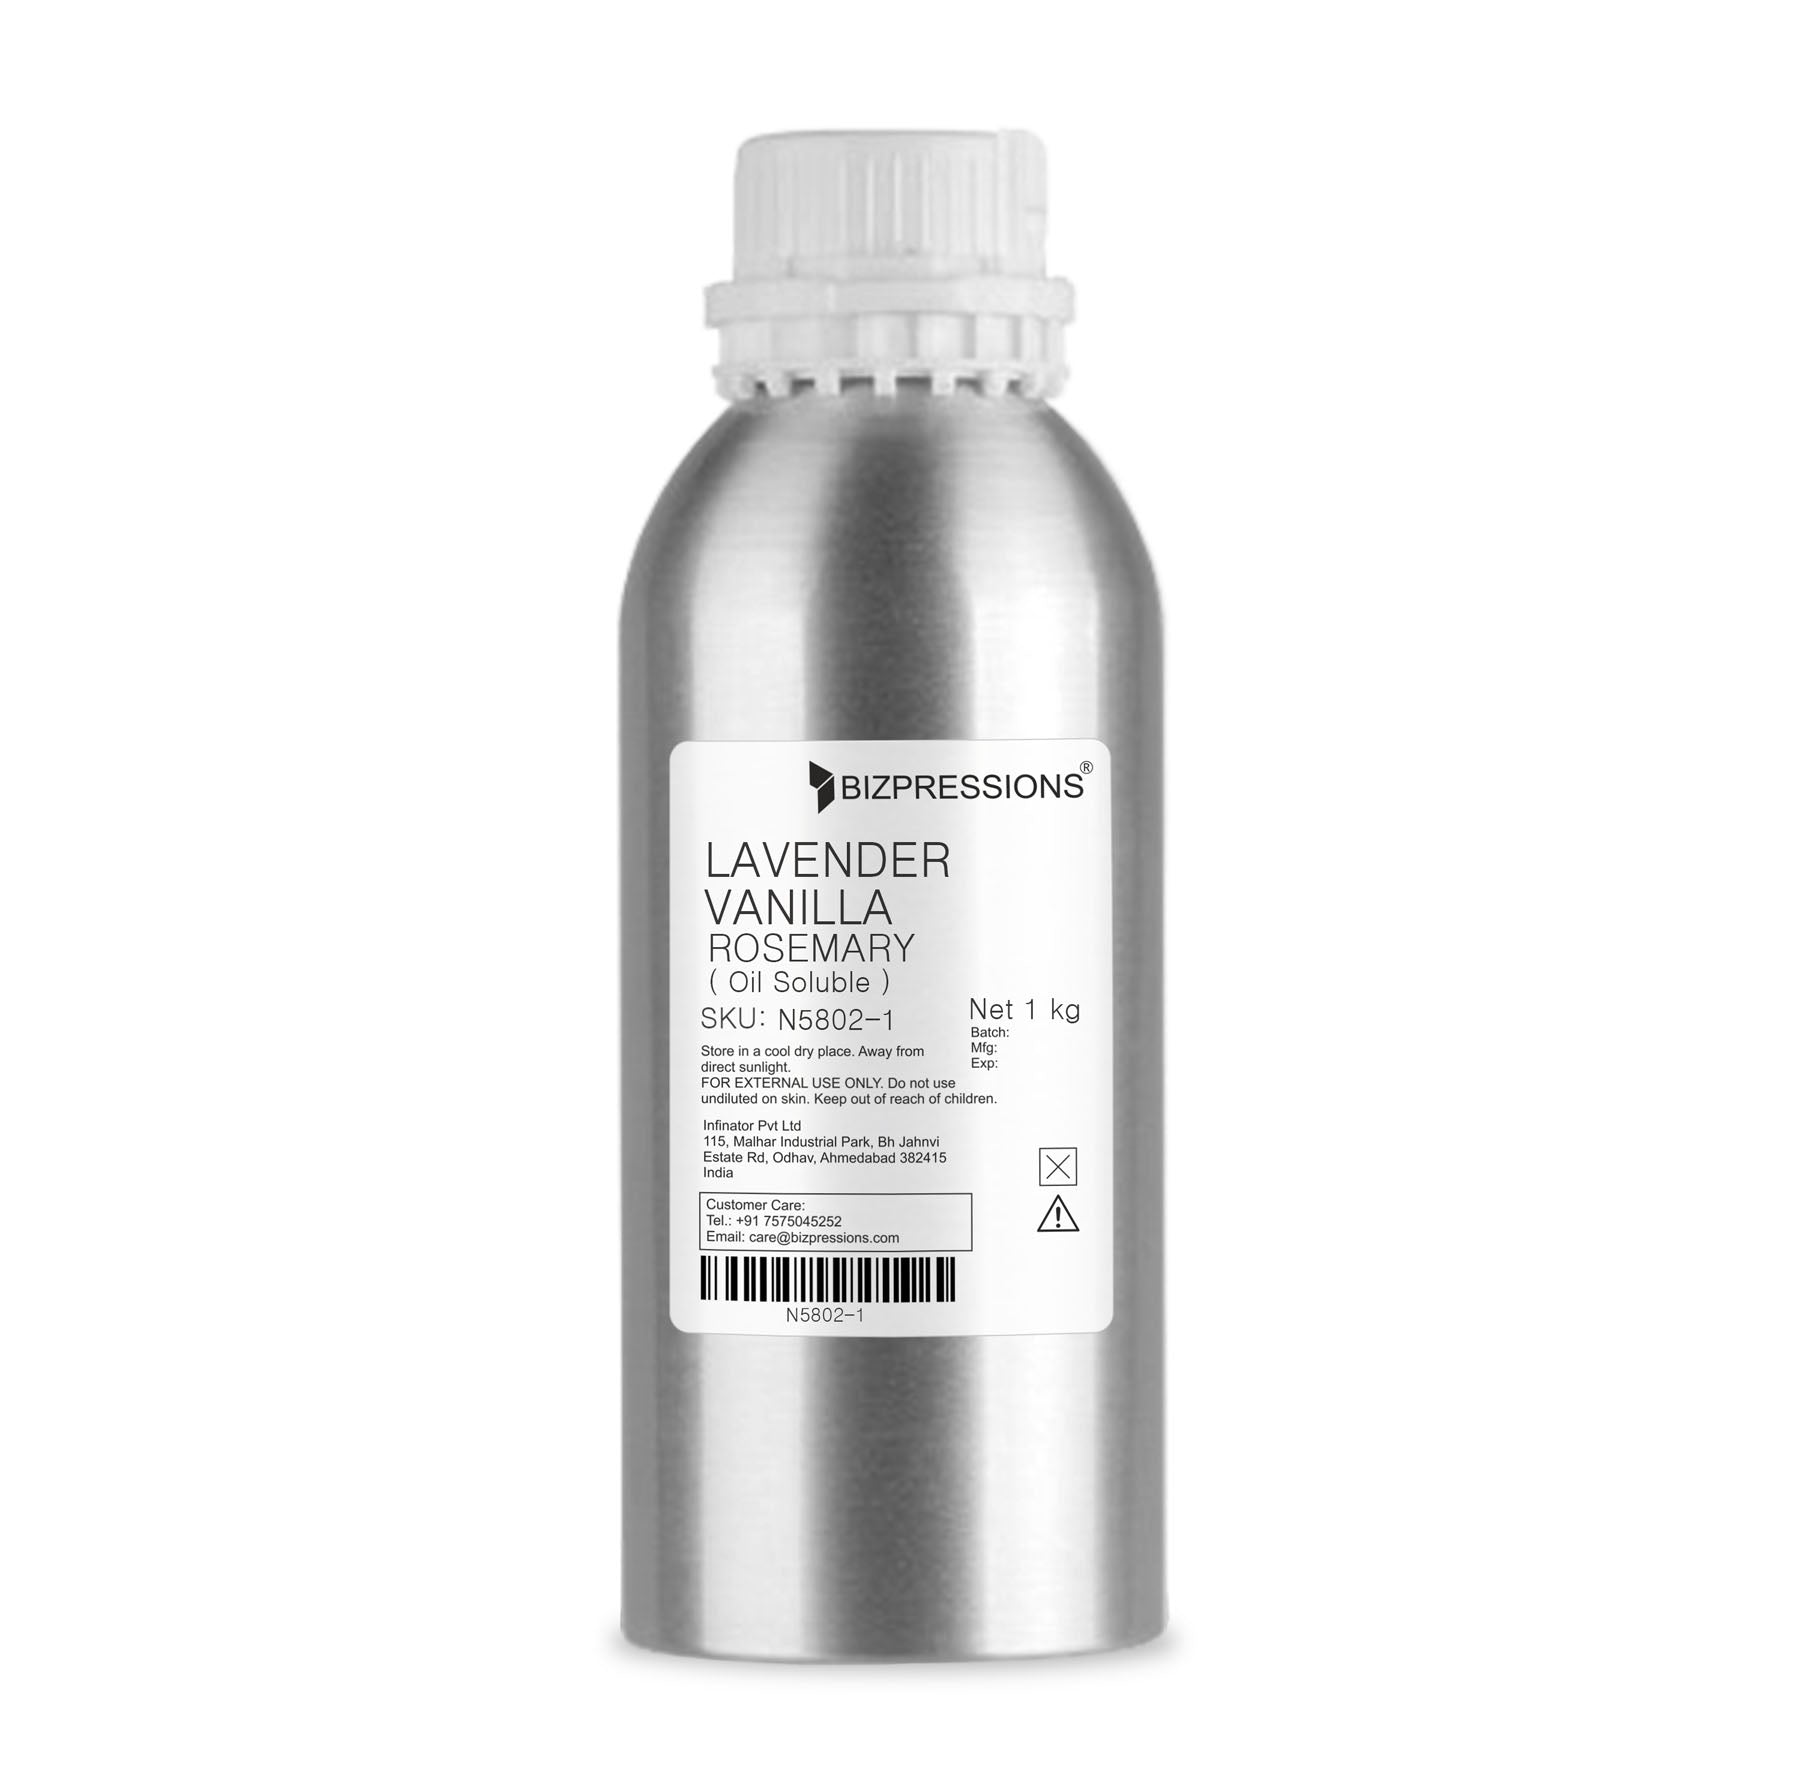 LAVENDER VANILLA ROSEMARY - Fragrance ( Oil Soluble ) - 1 kg